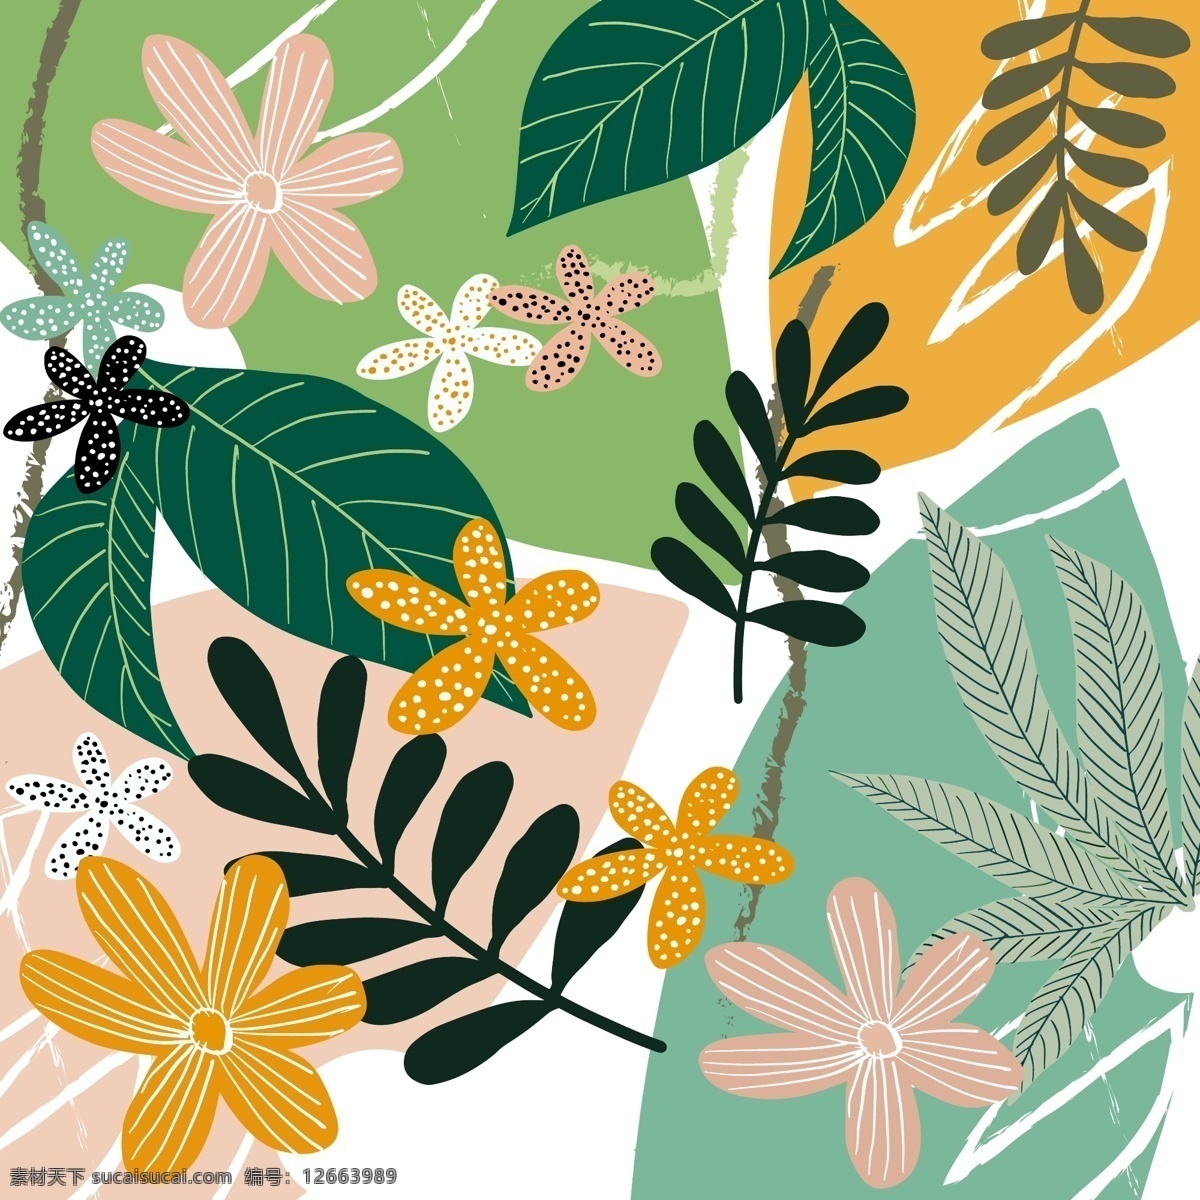 绿 橙 白底 叶子 组合 图案 植物 丛林 花 绿橙 花卉 插画 节日节气 藤蔓植物 海报